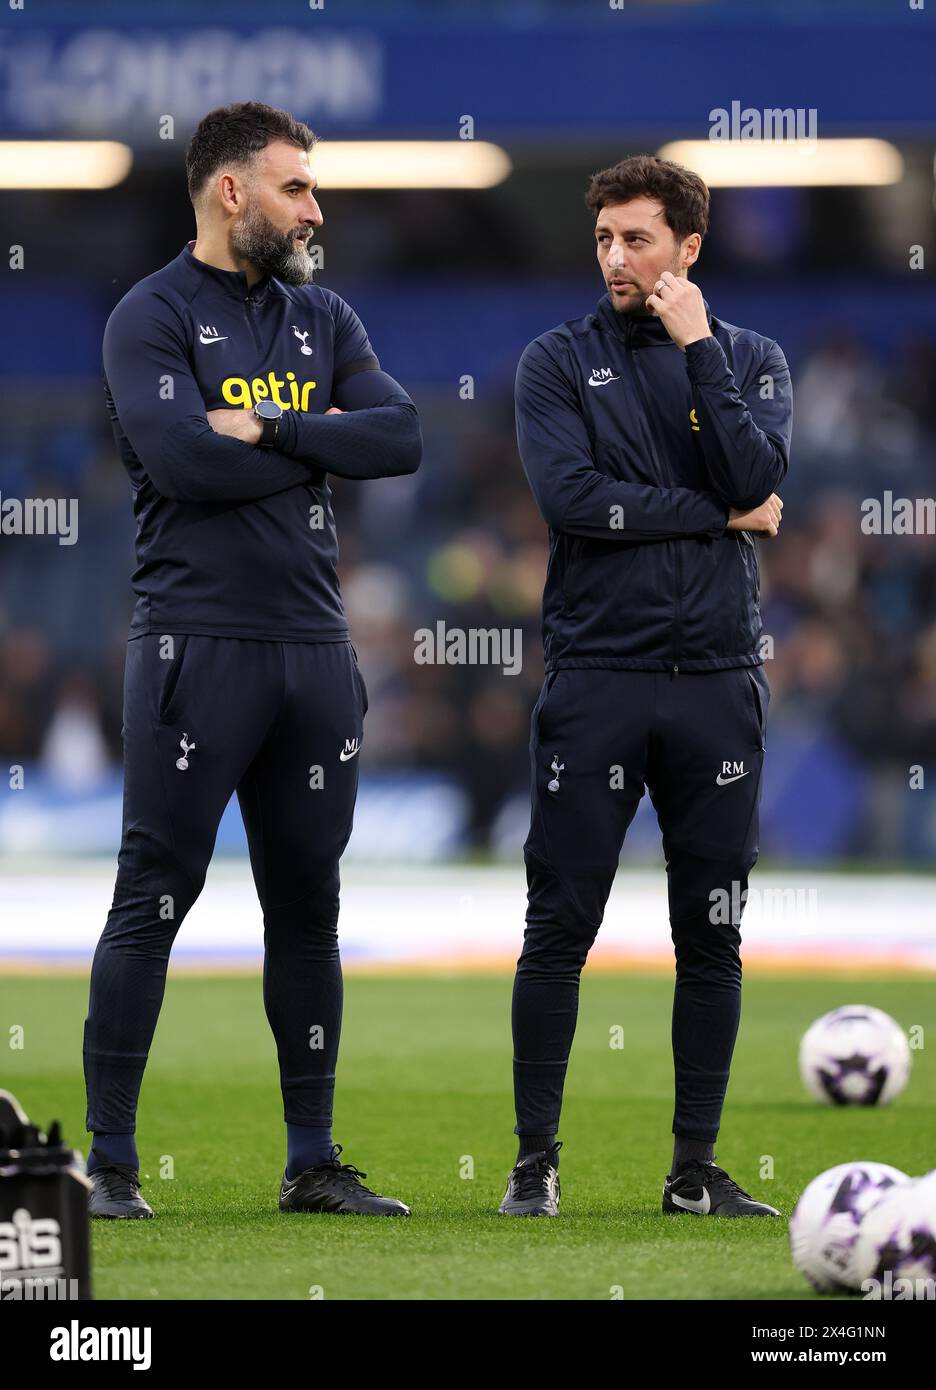 Londra, Regno Unito. 2 maggio 2024. Il Tottenham coachs Mile Jedinak e Ryan Mason durante la partita di Premier League allo Stamford Bridge, Londra. Il credito per immagini dovrebbe essere: David Klein/Sportimage Credit: Sportimage Ltd/Alamy Live News Foto Stock